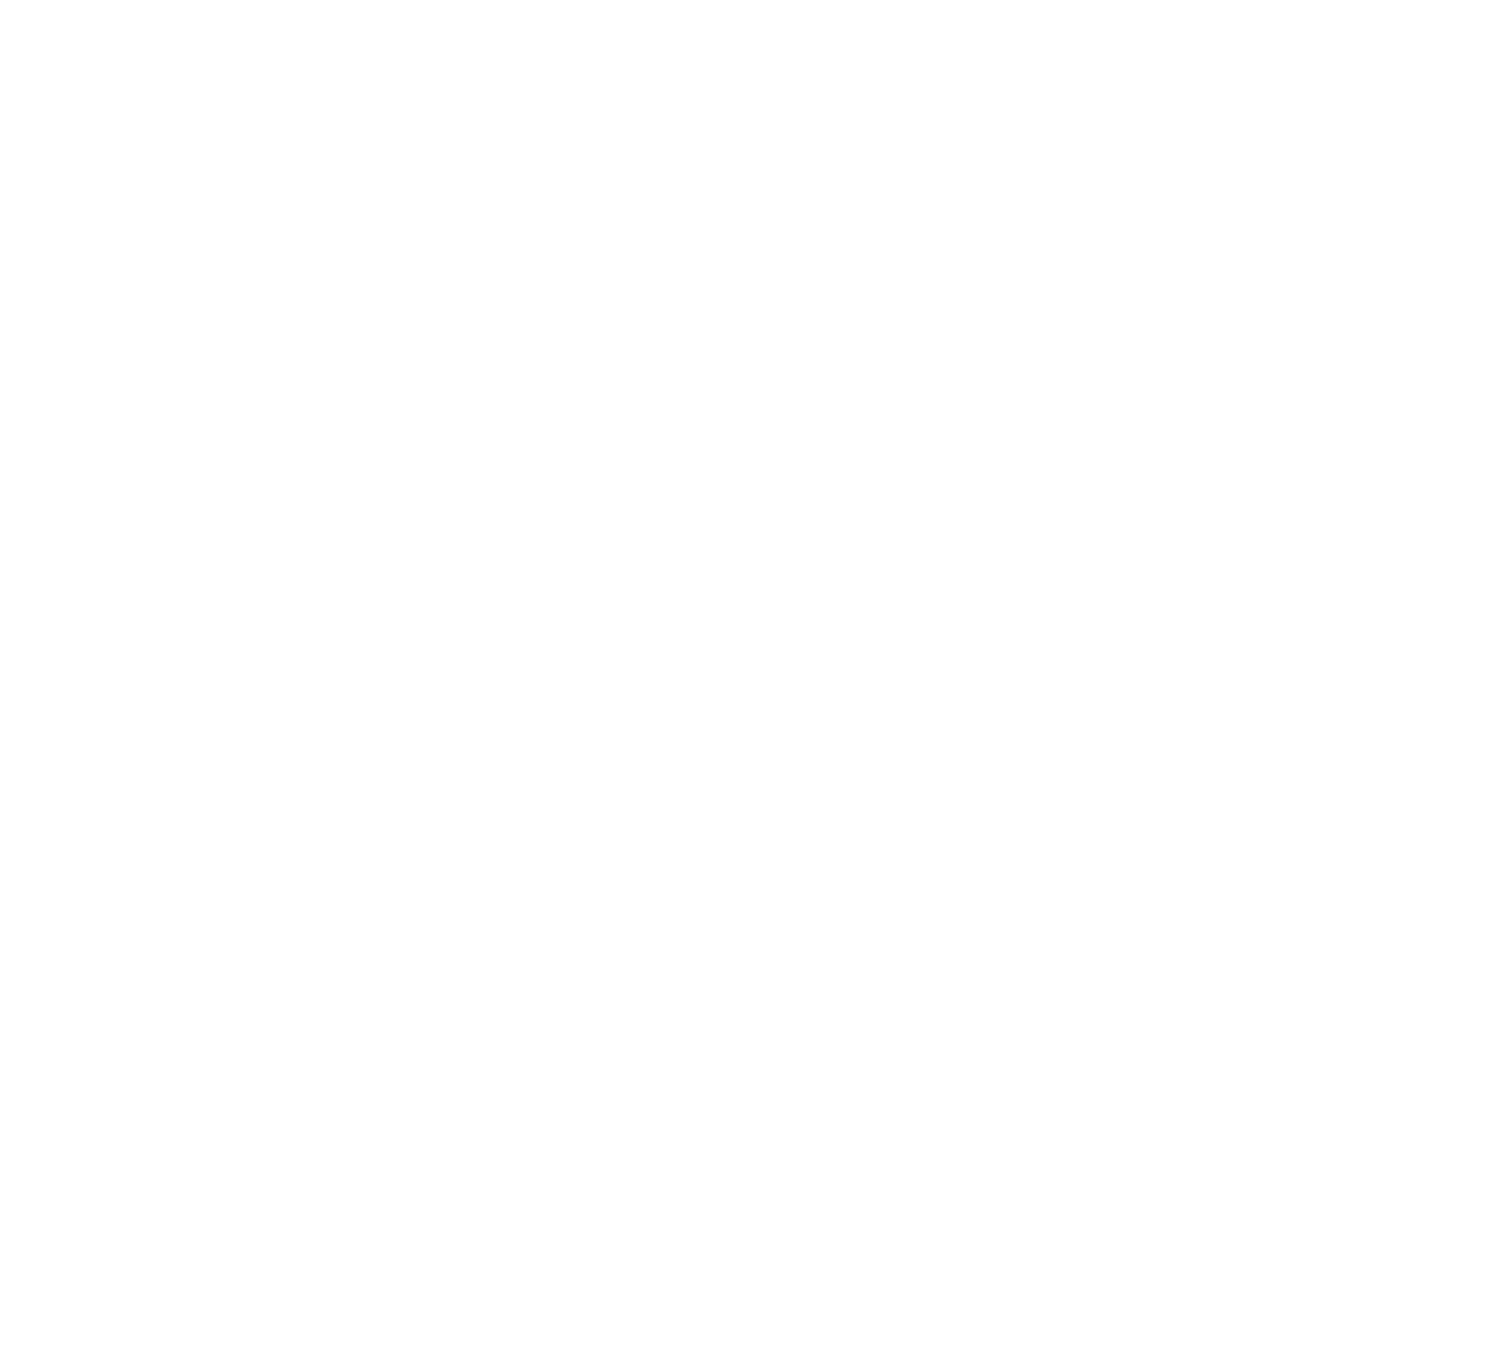 Linamar logo pour fonds sombres (PNG transparent)